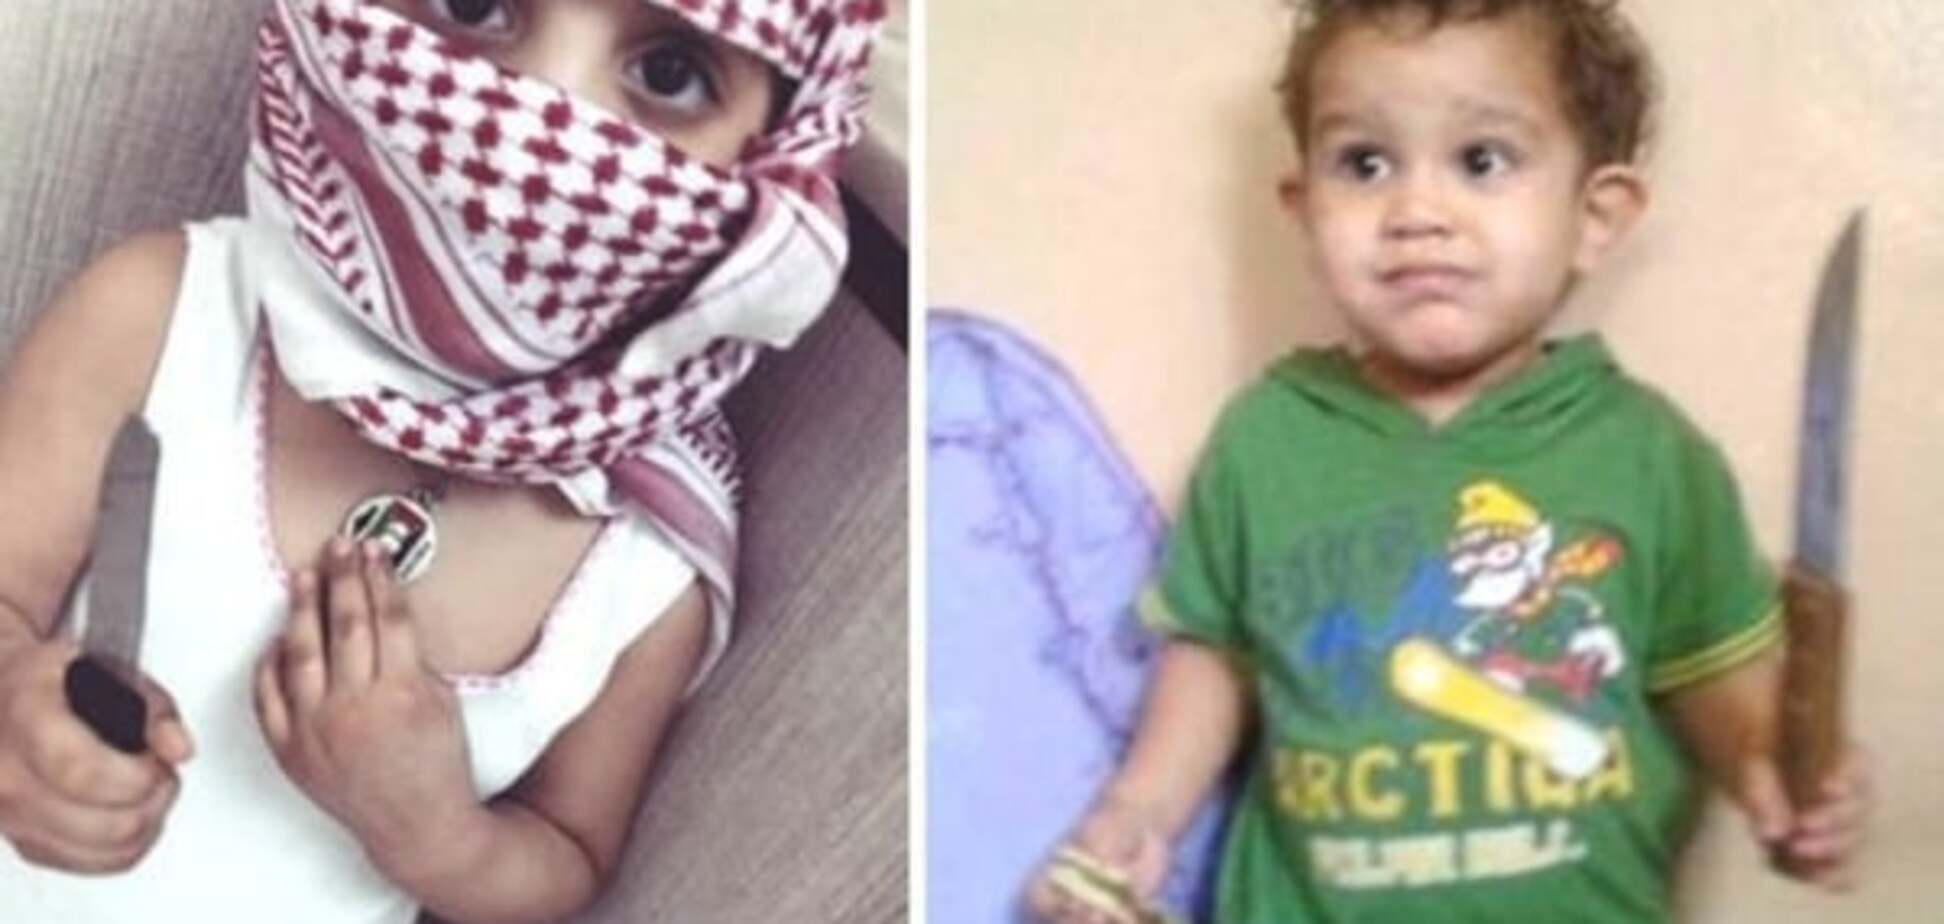 'Убивать с детства': террористы ИГИЛ запустили против Израиля шокирующий детский флешмоб с ножами - фотофакт